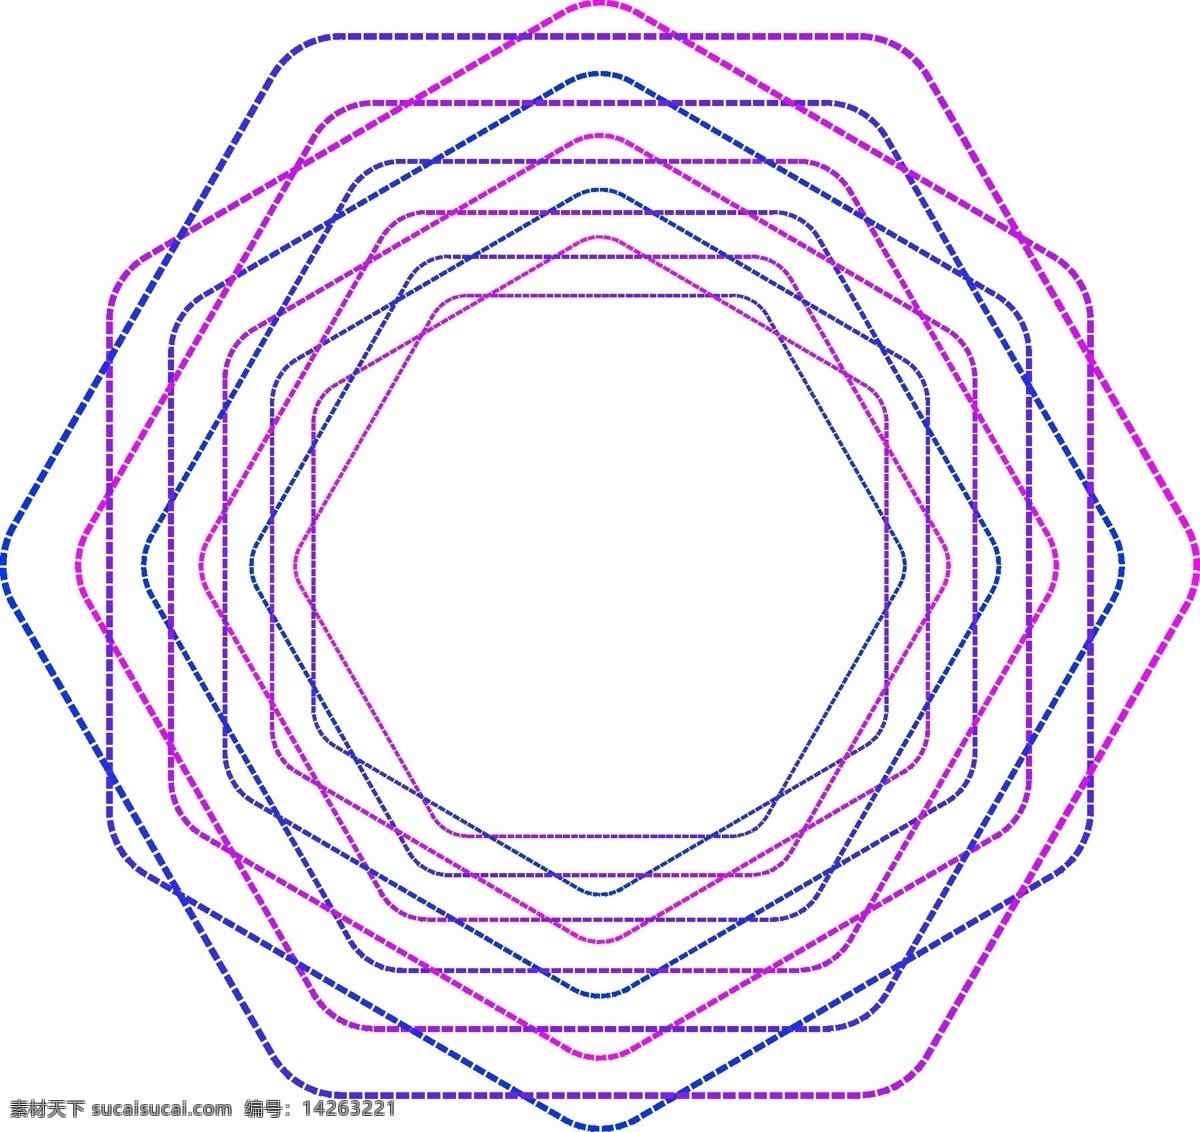 几何图形 欣赏 几何 图形 渐变 紫色 蓝色 线条 扭曲 圆弧 源文件 线段 虚线 旋转 艺术